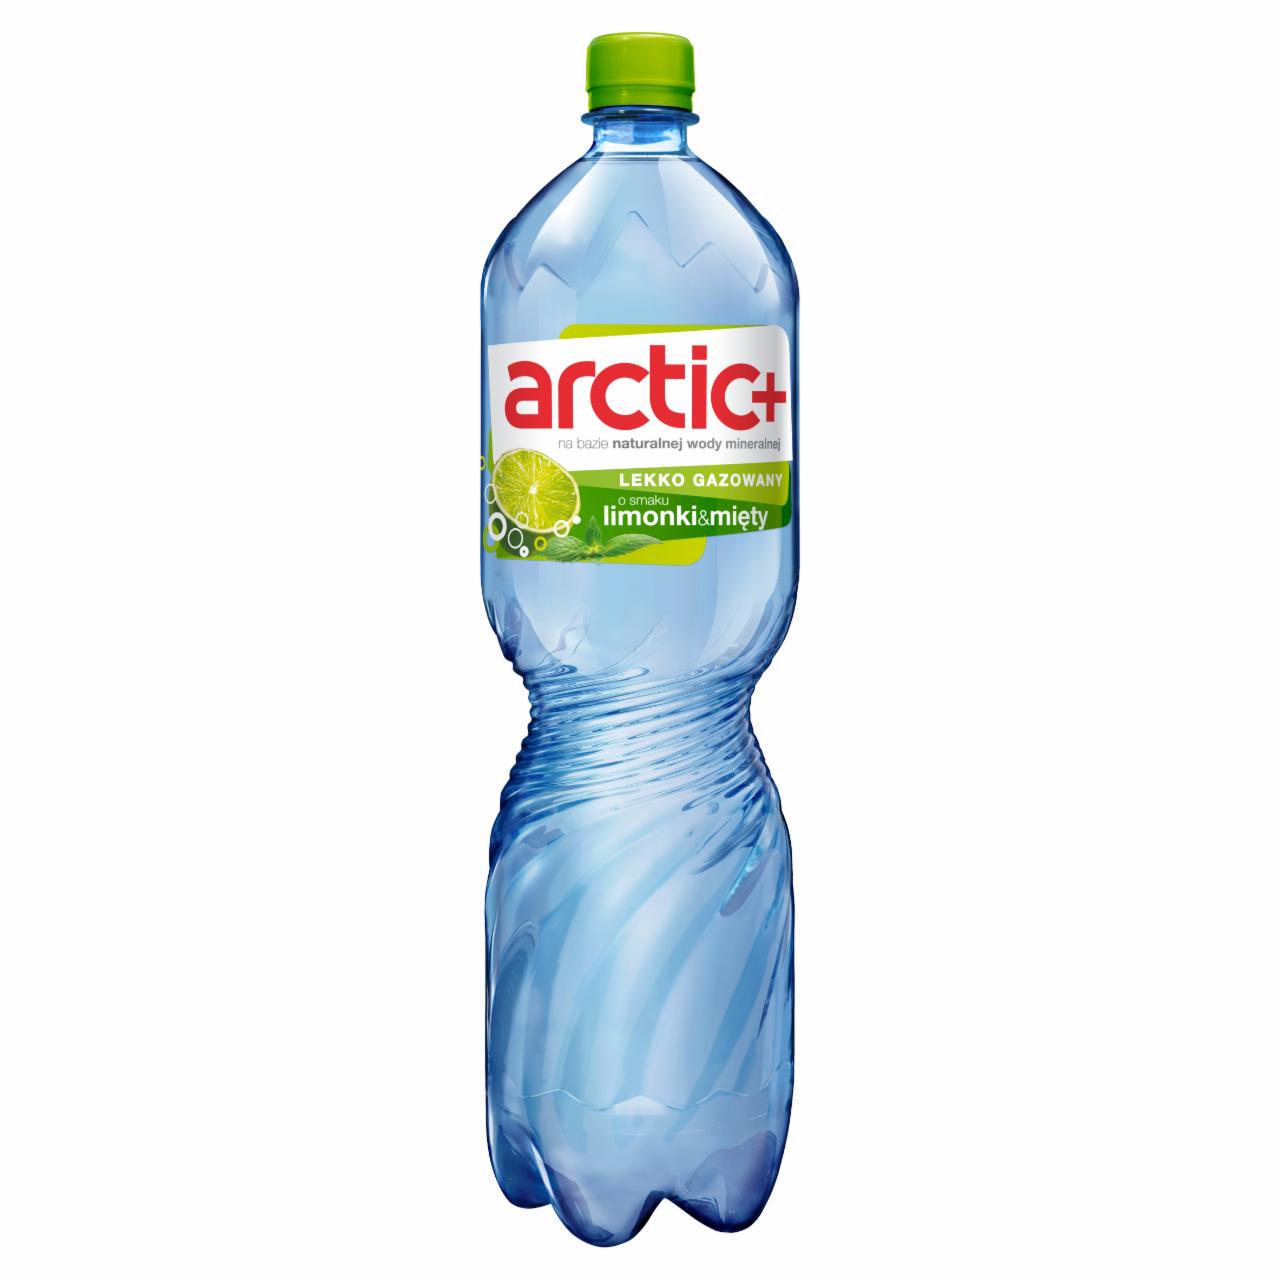 Zdjęcia - Arctic Plus Napój lekko gazowany o smaku limonki z miętą 1,5 l